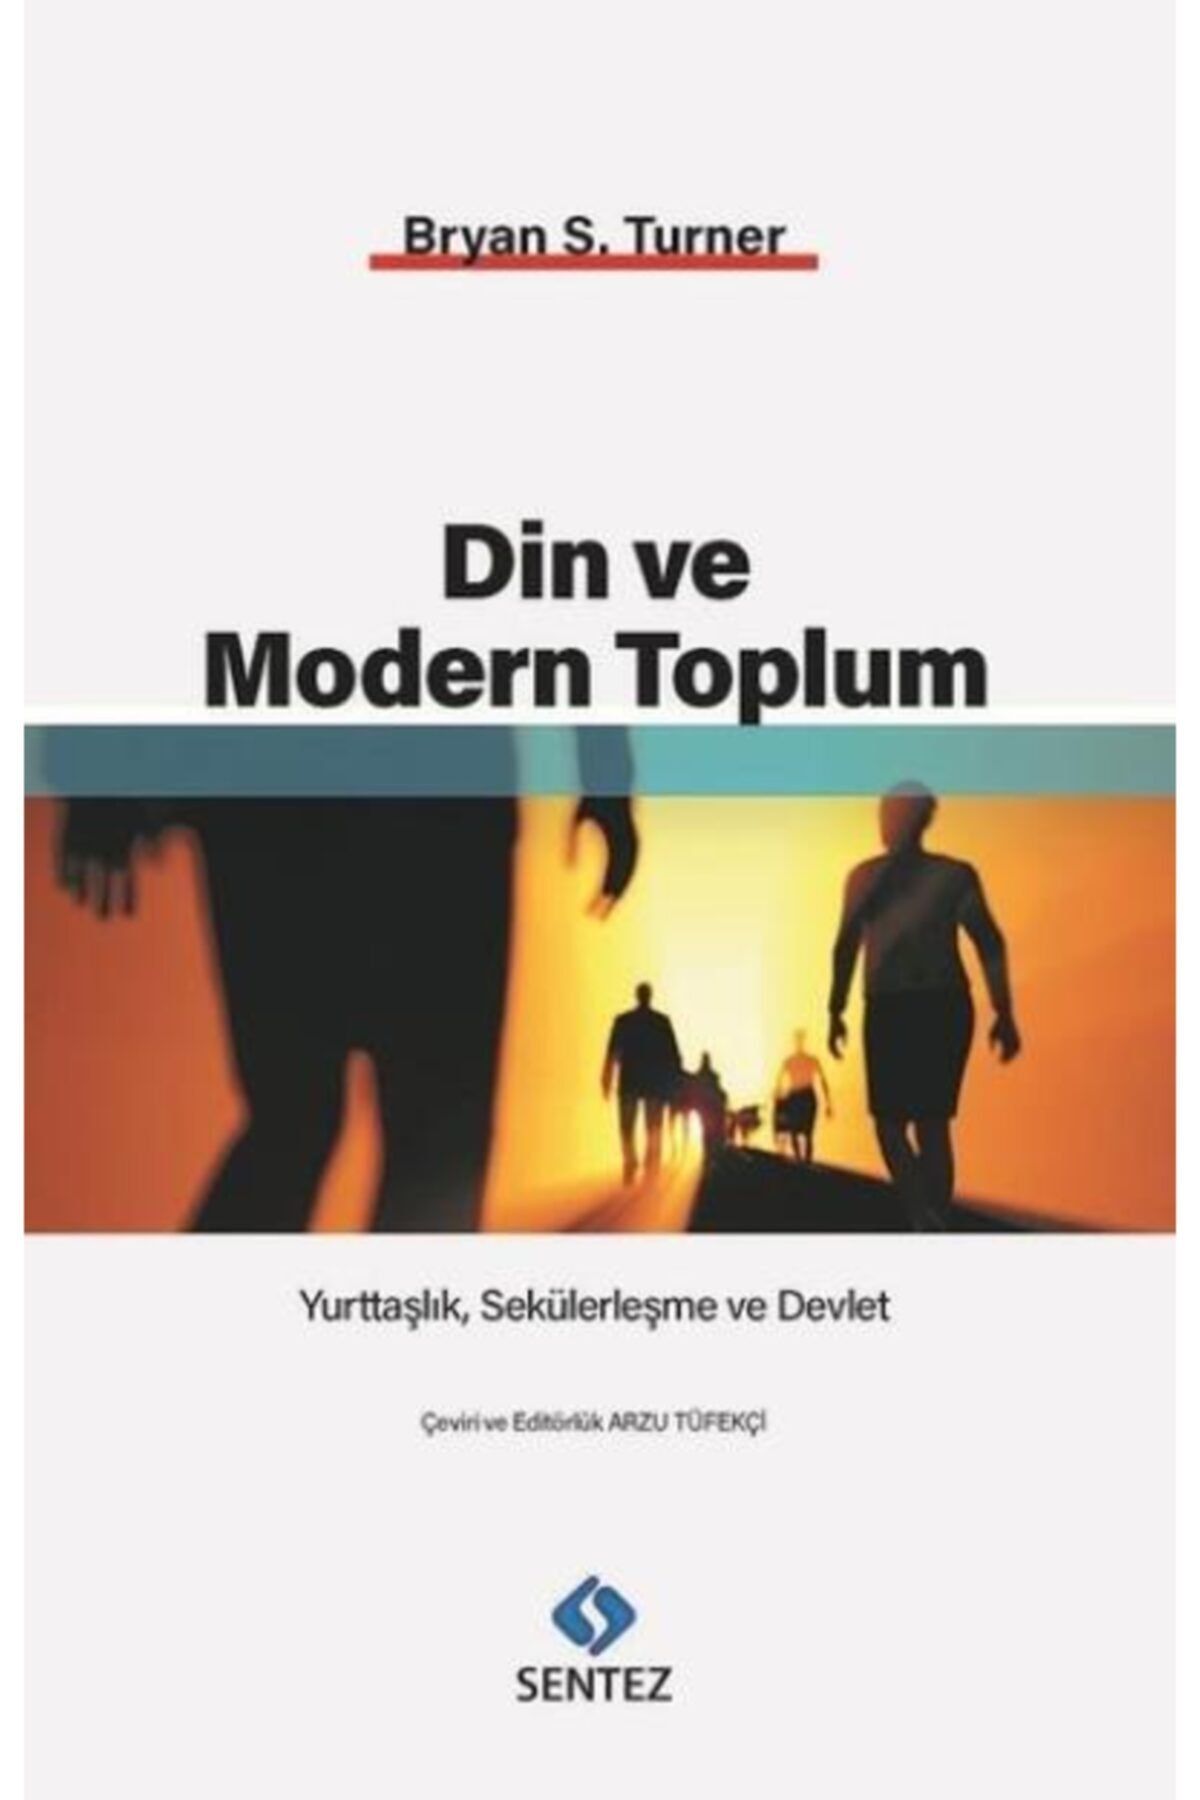 Genel Markalar Din ve Modern Toplum / Bryan S. Turner / Sentez Yayınları / 9786059922647